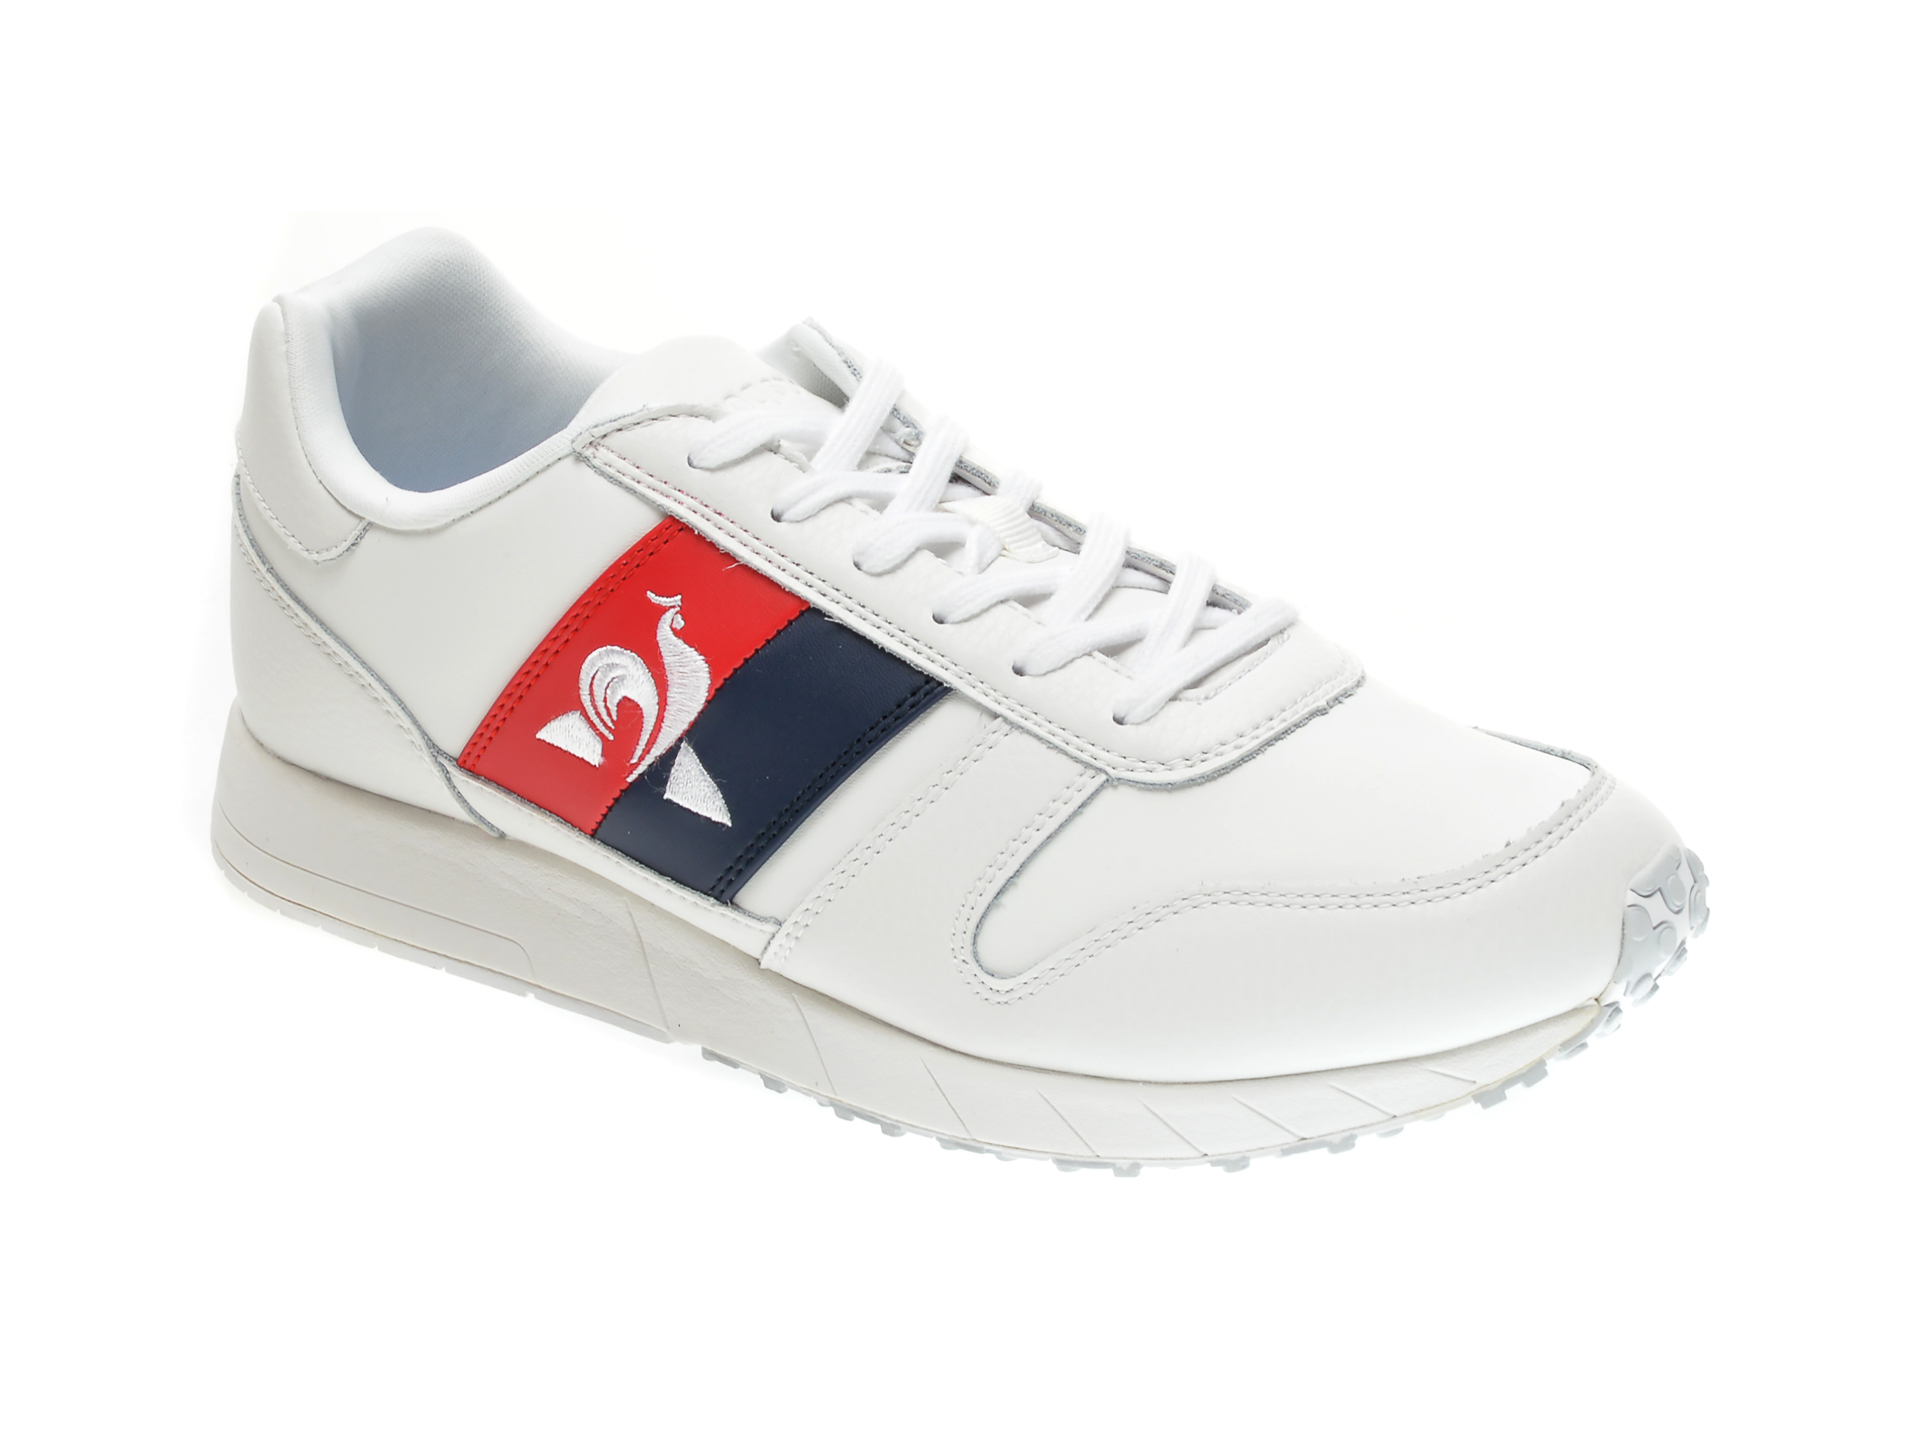 Pantofi sport LE COQ SPORTIF albi, 2020175, din piele naturala